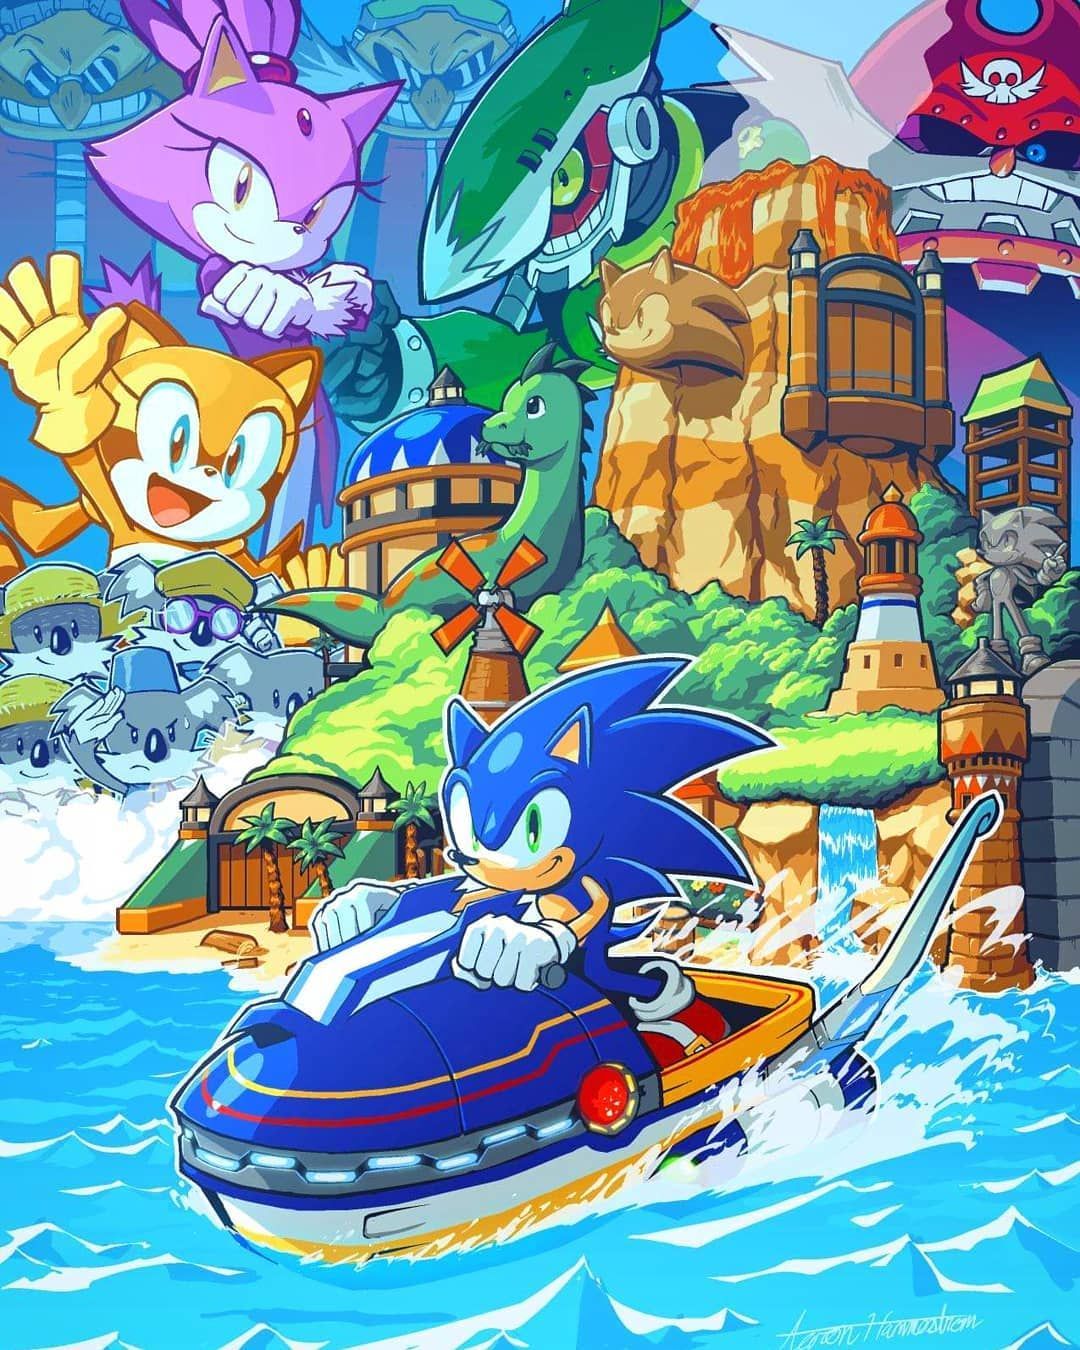 Continuando nossa coluna de posts do Sonic: O que você acha do jogo Sonic Rush Adventure para DS? sonic sega nintendods. Sonic fan art, Hedgehog art, Sonic art